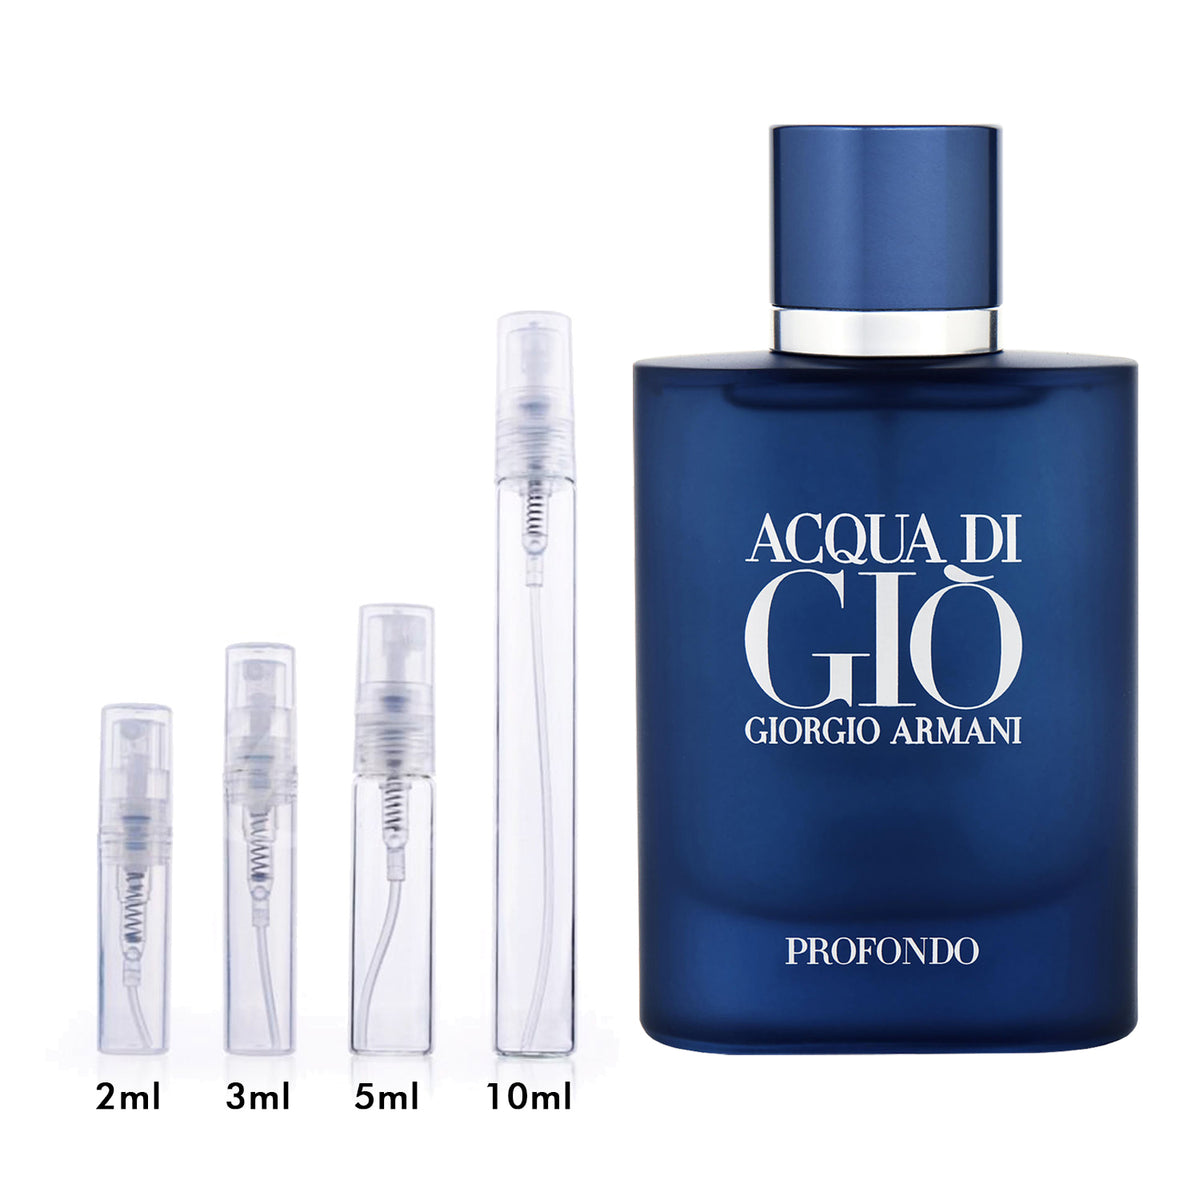 Acqua Di Gio Profondo by GIORGIO ARMANI Fragrance Samples, DecantX